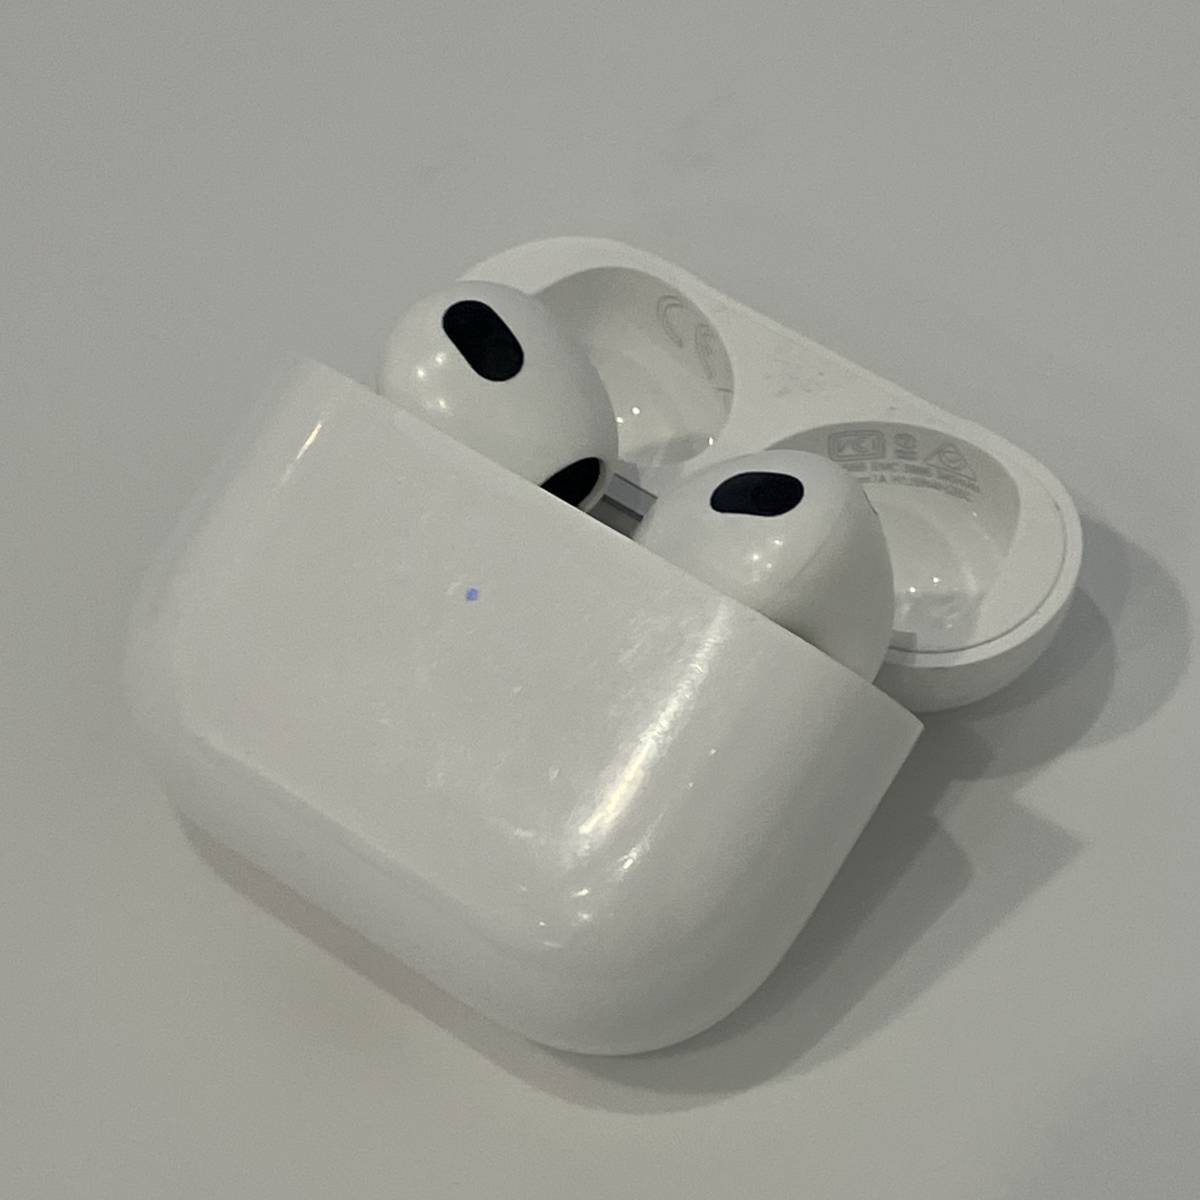 【中古】Apple AirPods 第3世代 MagSafe充電ケース MME73J/A Bluetooth ワイヤレス イヤホン お買い得♪